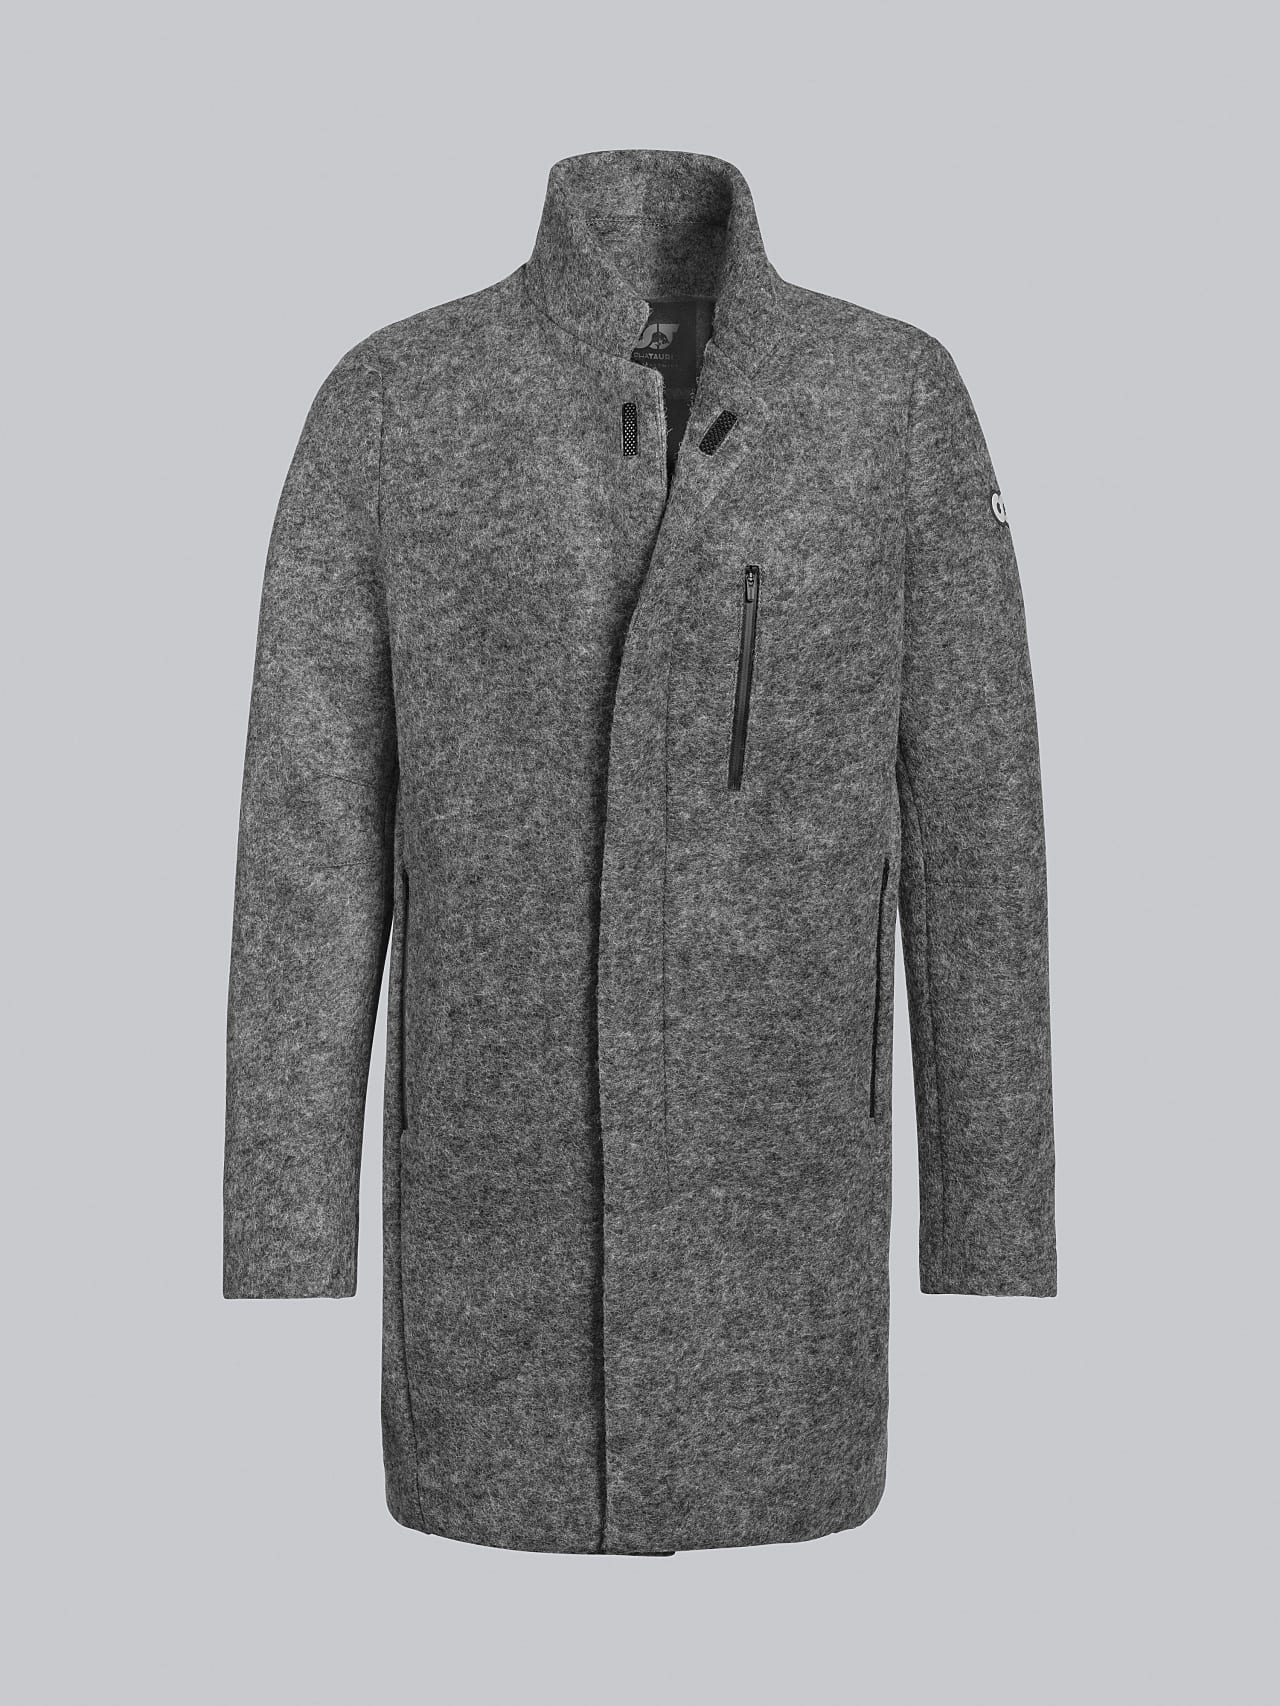 AlphaTauri | ONELO V2.Y5.02 | Wool Coat in grey / melange for Men